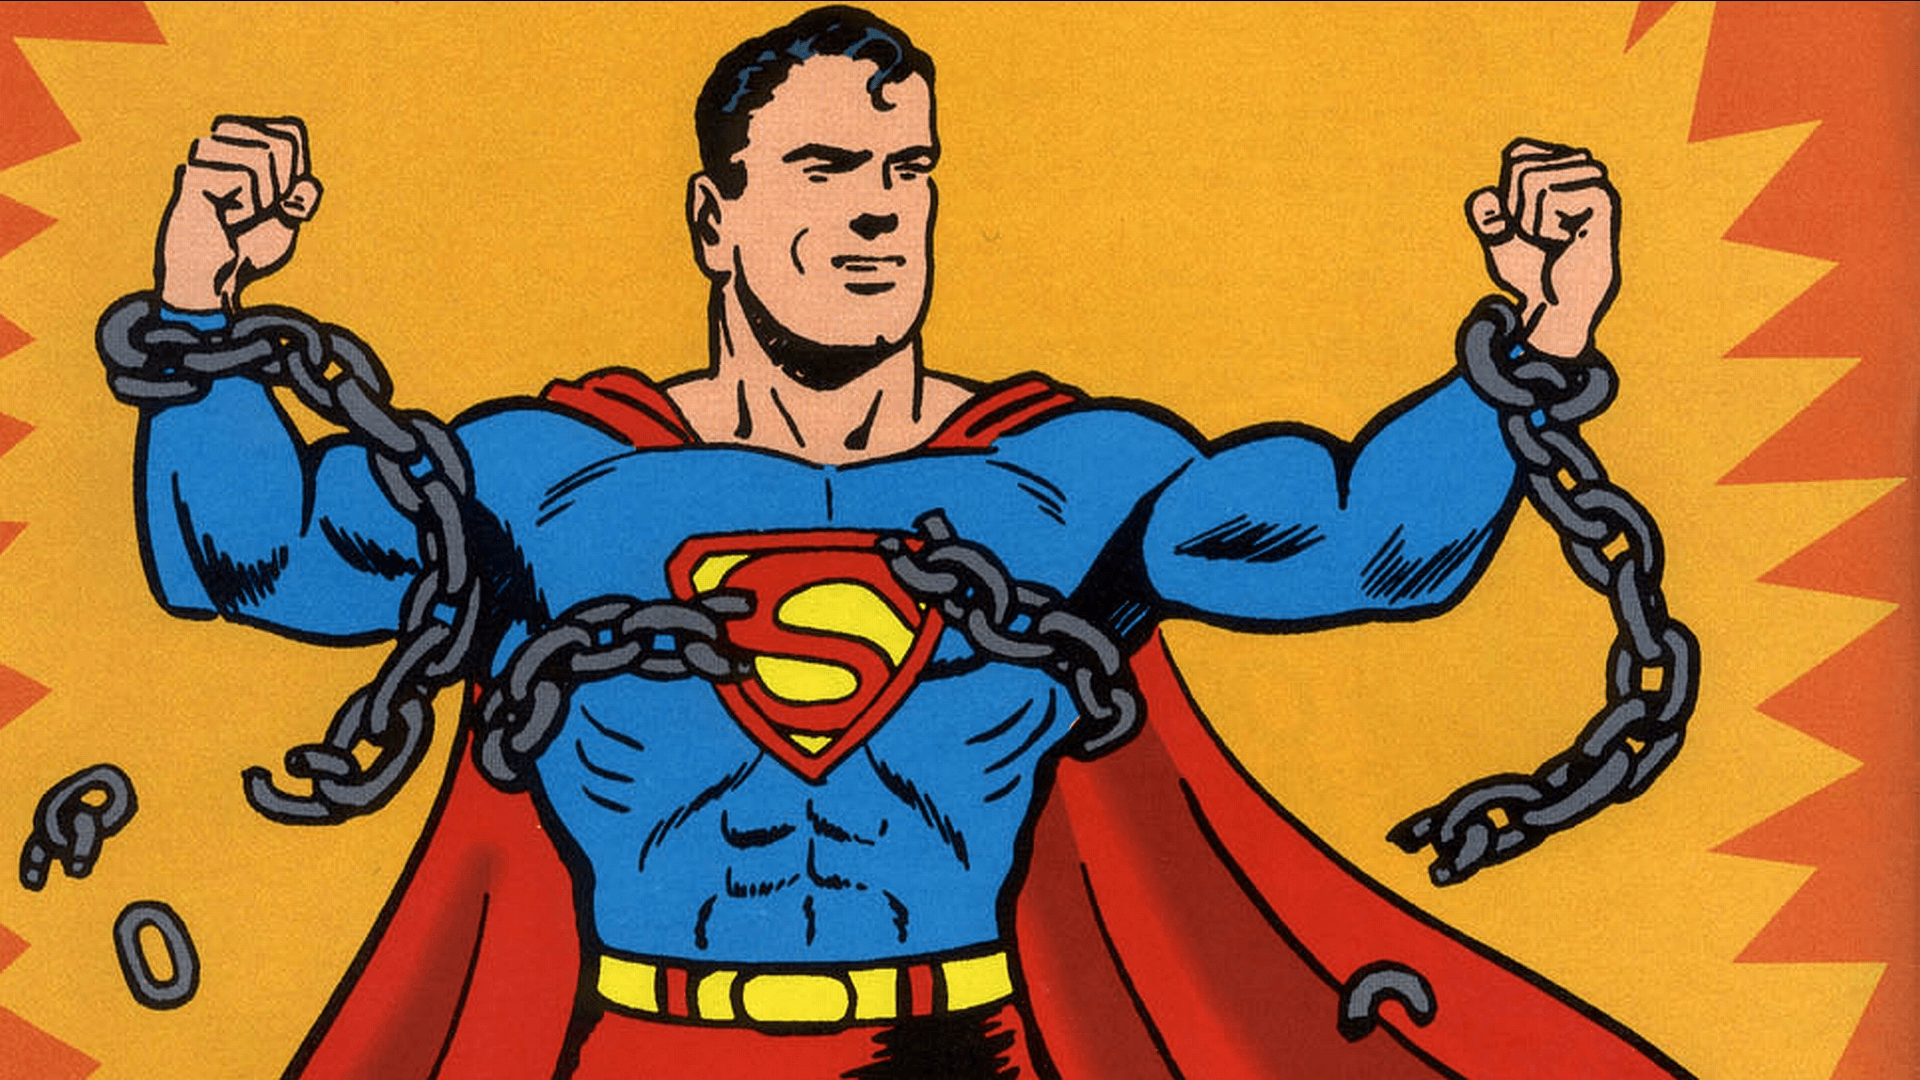 Superman character Kal-El